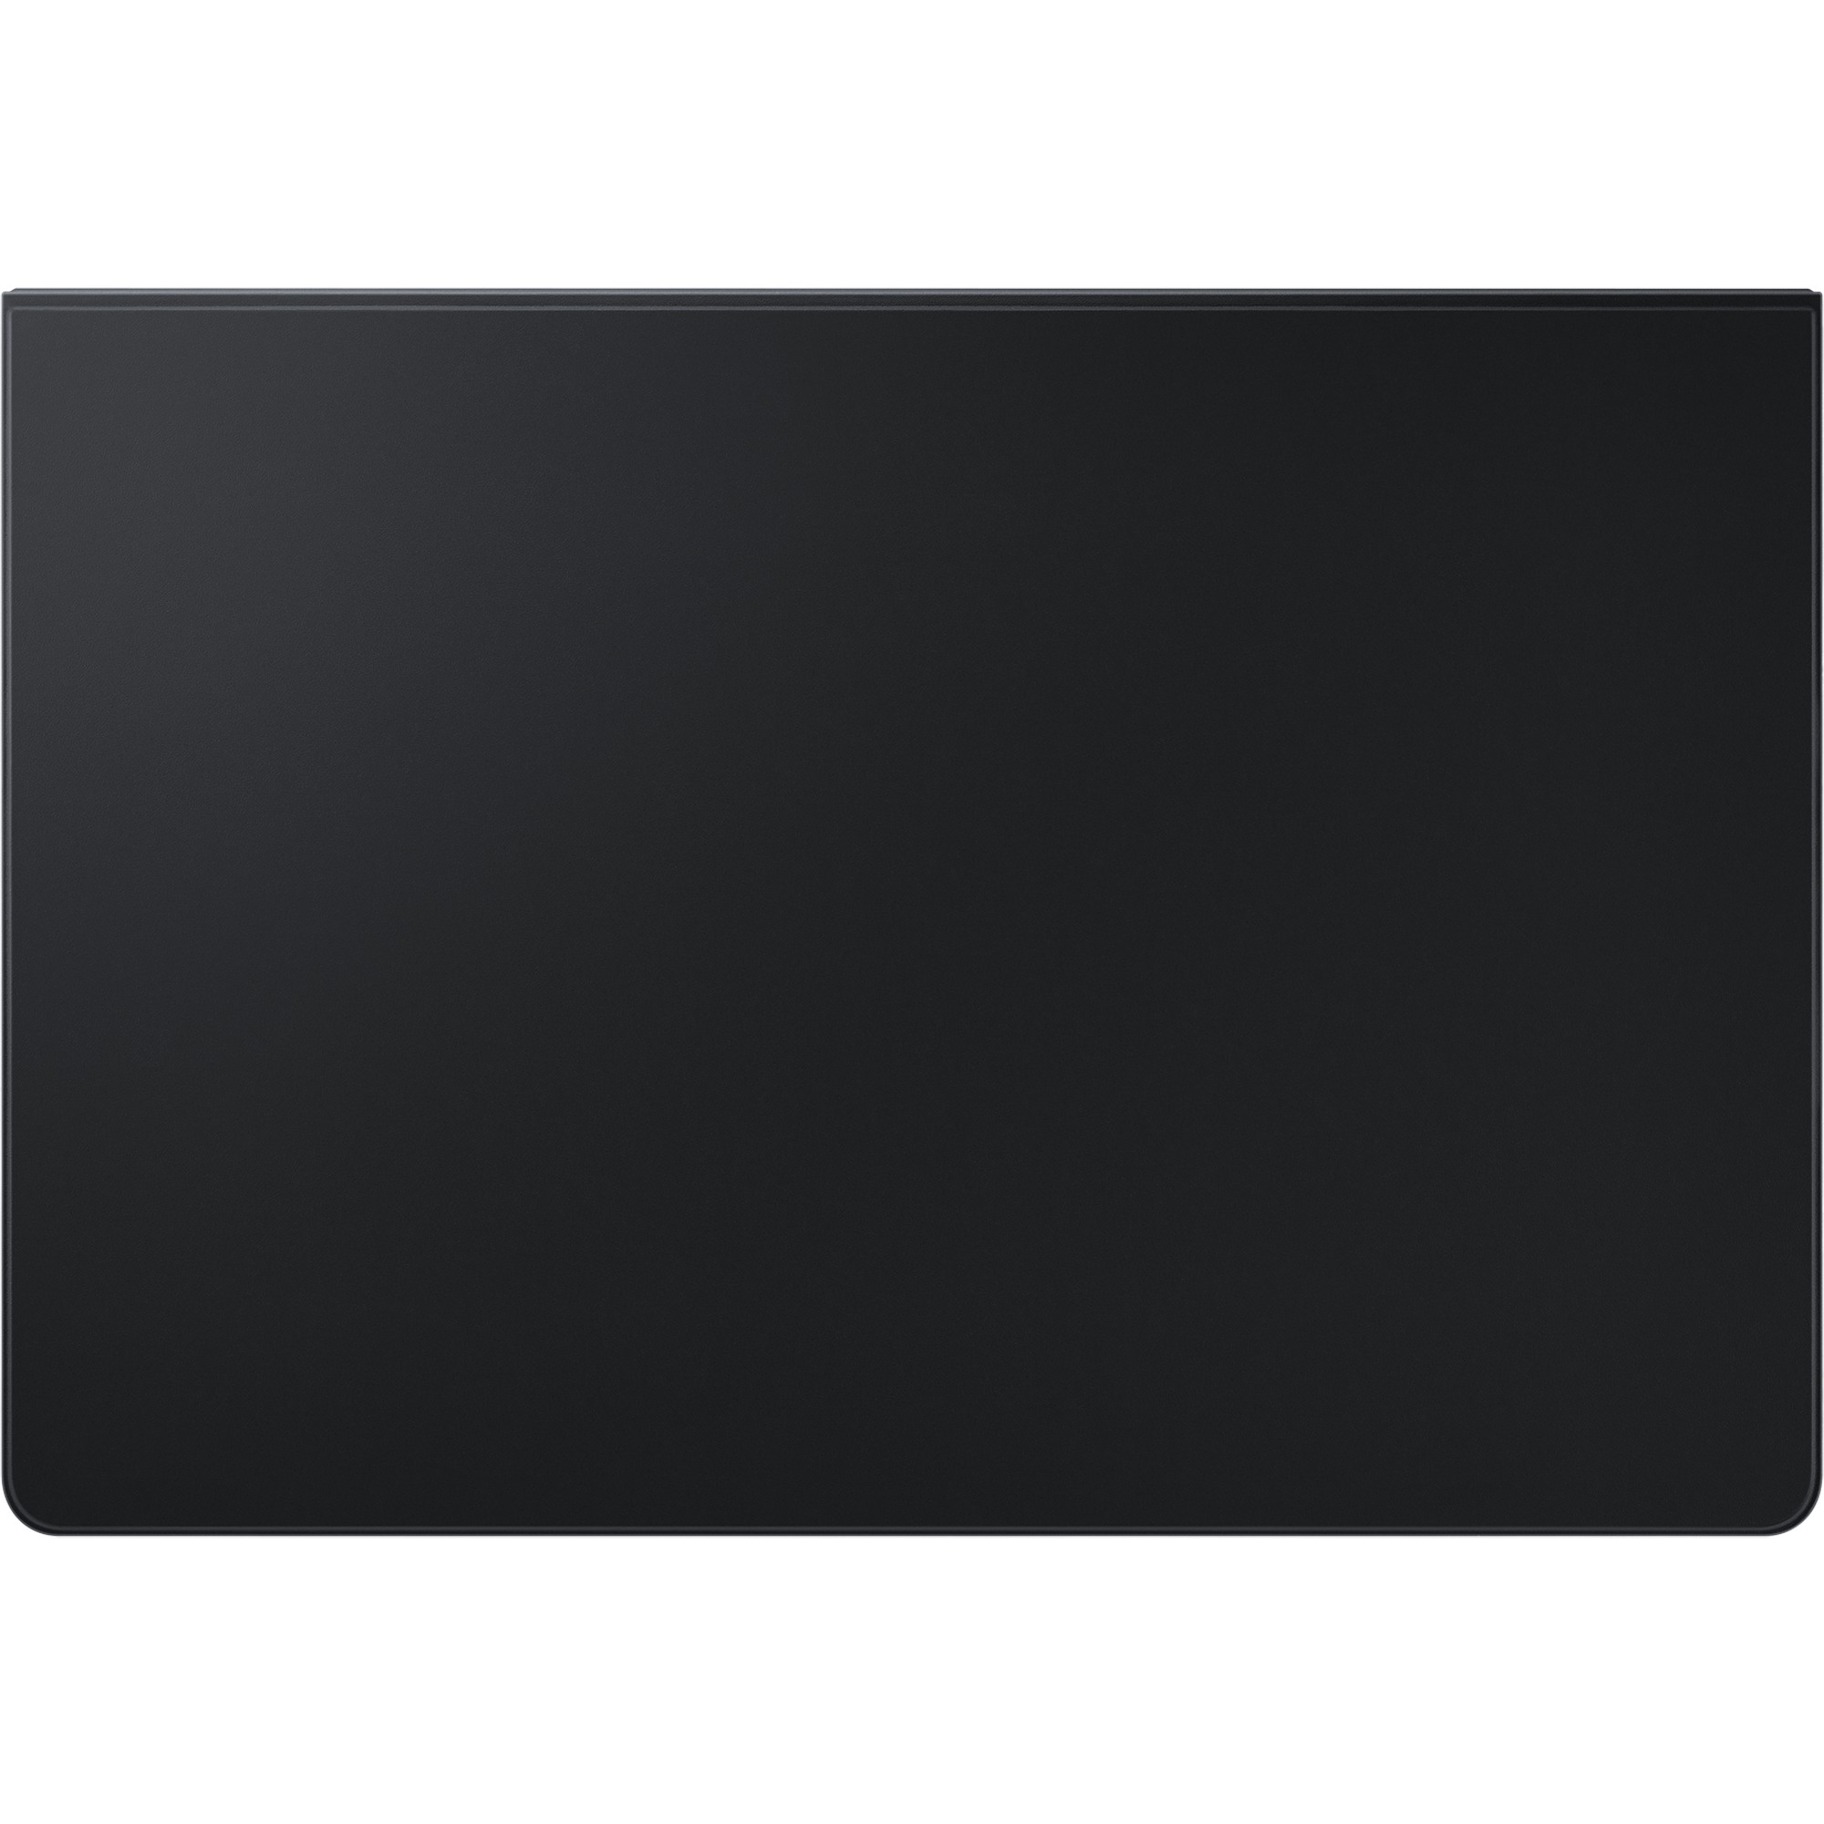 Image of Alternate - Book Cover Keyboard Slim EF-DT730 für das Galaxy Tab S7+ / Tab S7 FE, Tastatur online einkaufen bei Alternate